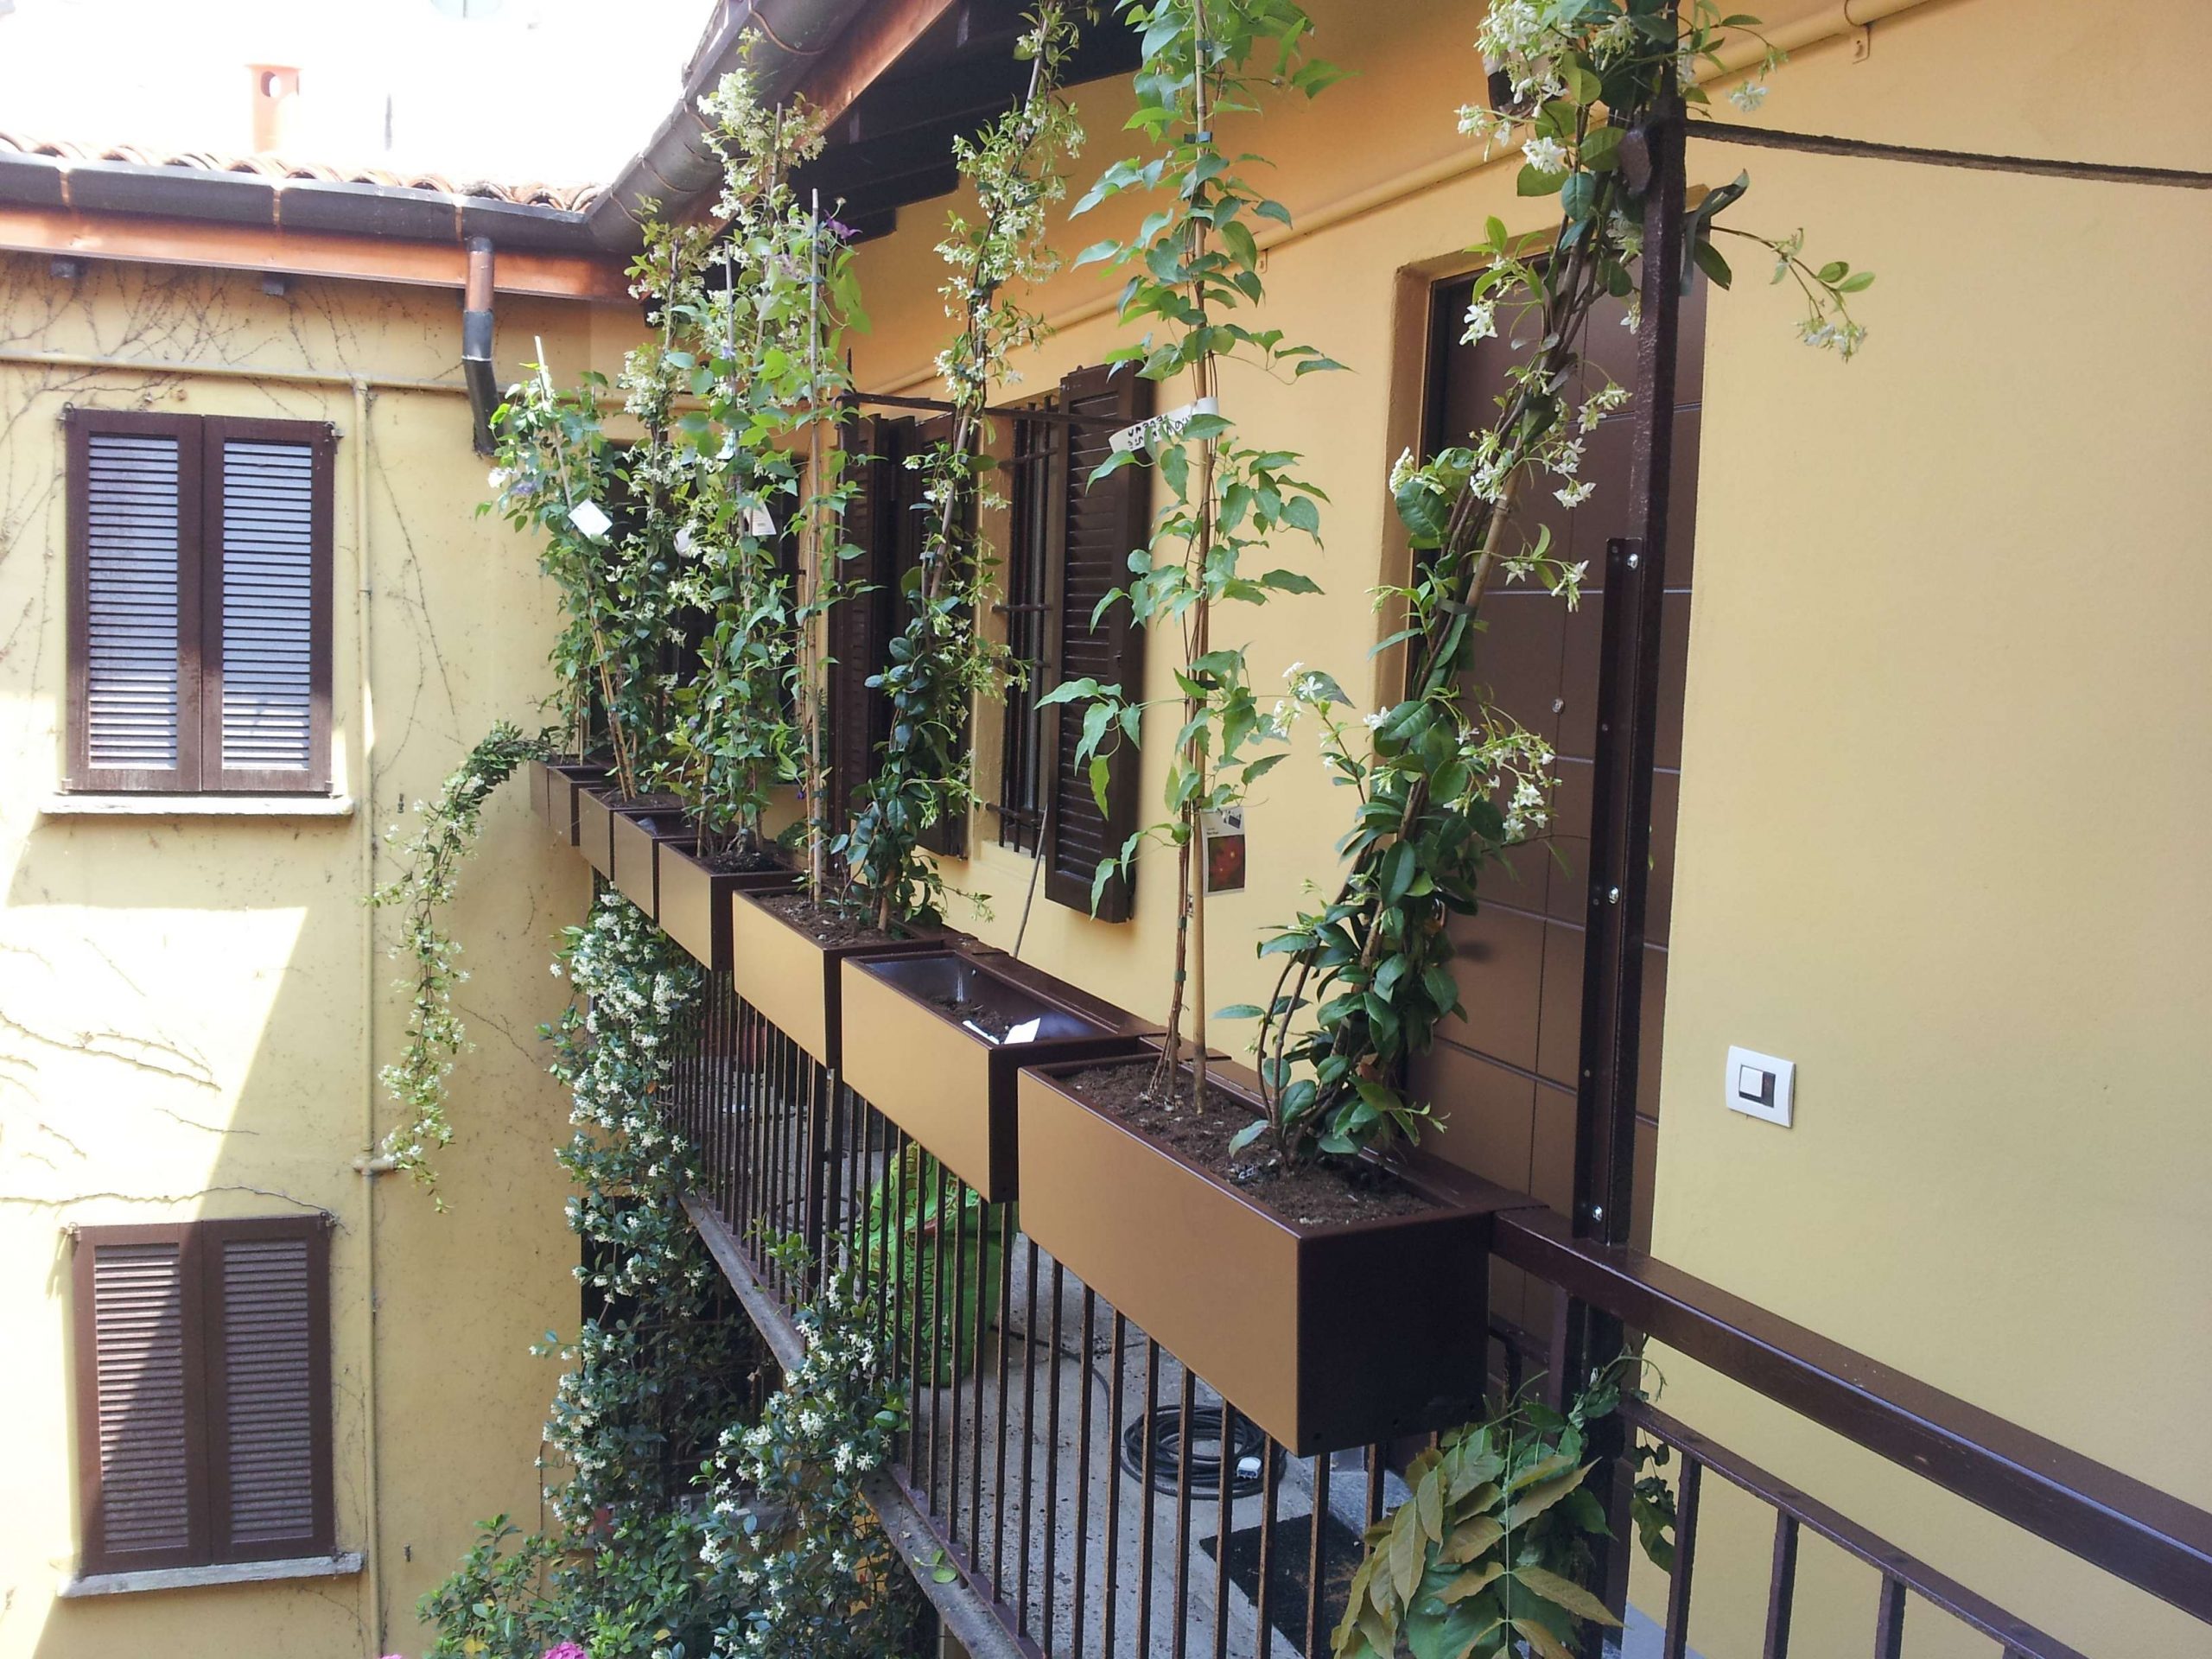 2 X GRIGIO ROUND Ponte Fioriere verande balcone ringhiera da appendere per piante vasi di fiori 